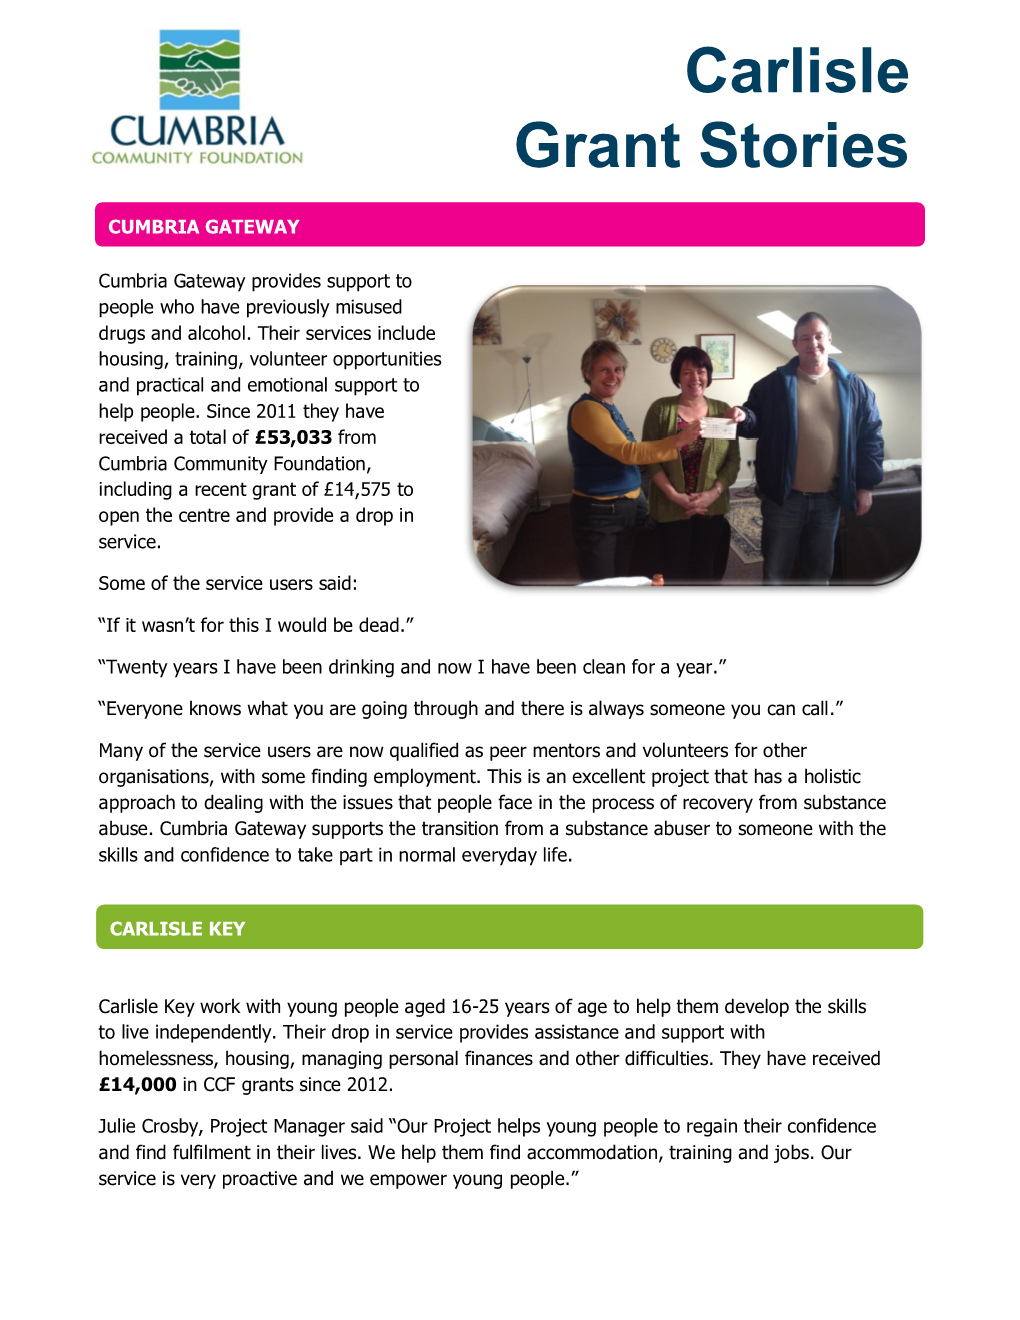 Carlisle Grant Stories